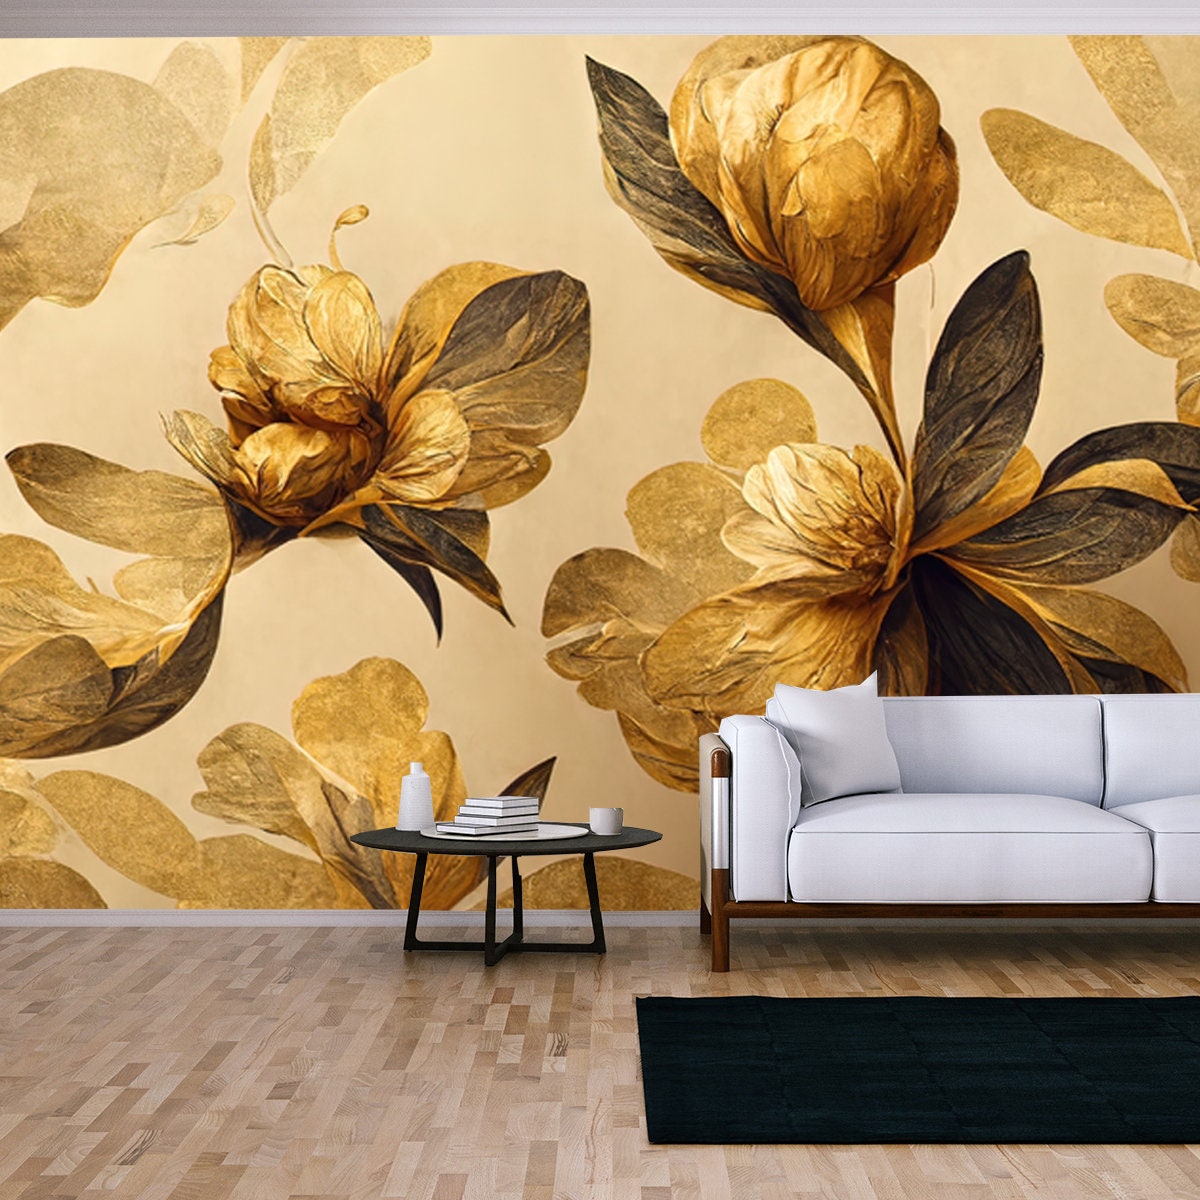 4K Golden Floral Background, Abstract Vintage Flower Design Wallpaper Living Room Mural